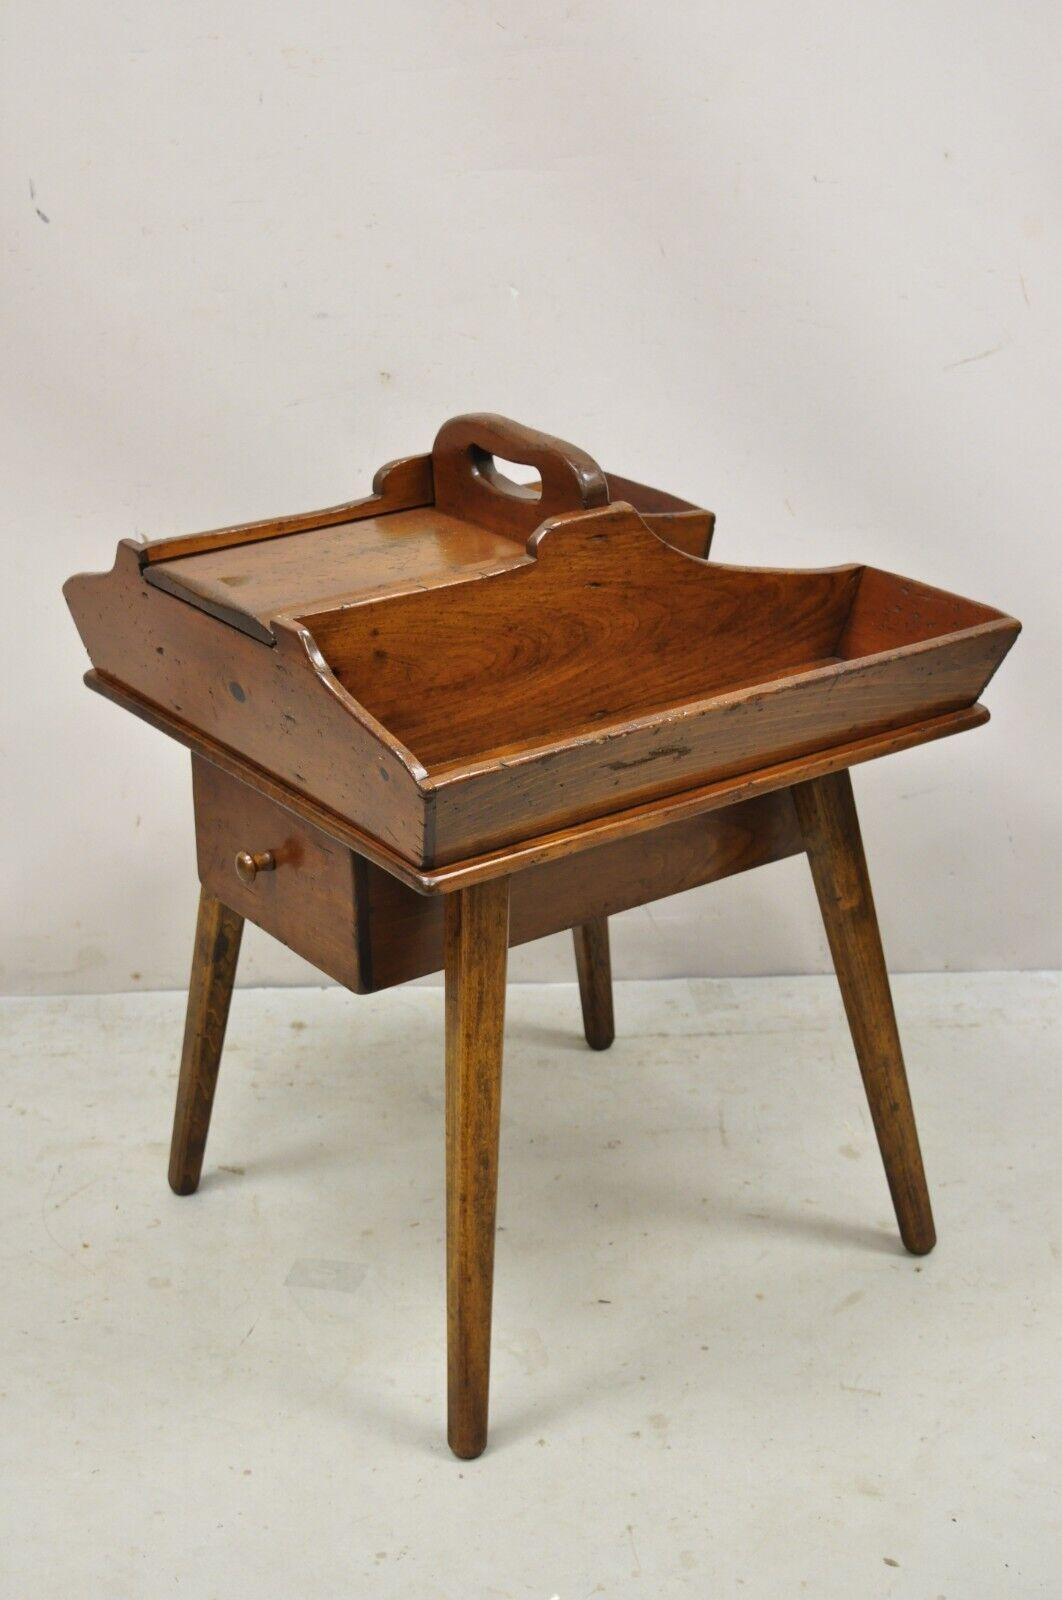 Vintage Kieferholz primitive Land rustikale Schuster Arbeit stehen Beistelltisch mit Schublade. Der Artikel verfügt über eine doppelseitige Schublade, ein aufklappbares Staufach, eine Konstruktion aus Massivholz, eine gealterte Oberfläche, ein sehr